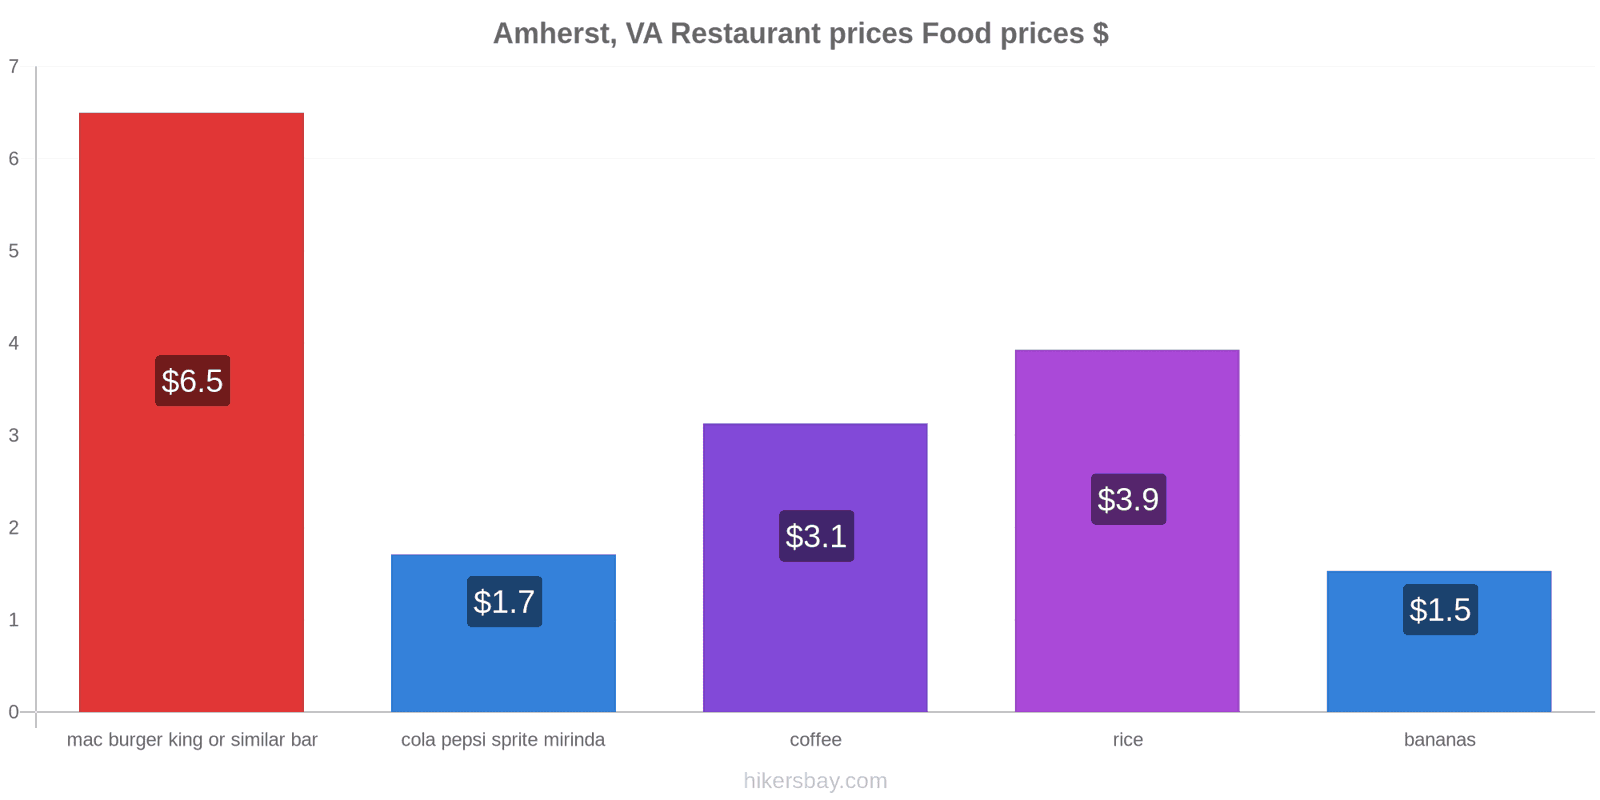 Amherst, VA price changes hikersbay.com